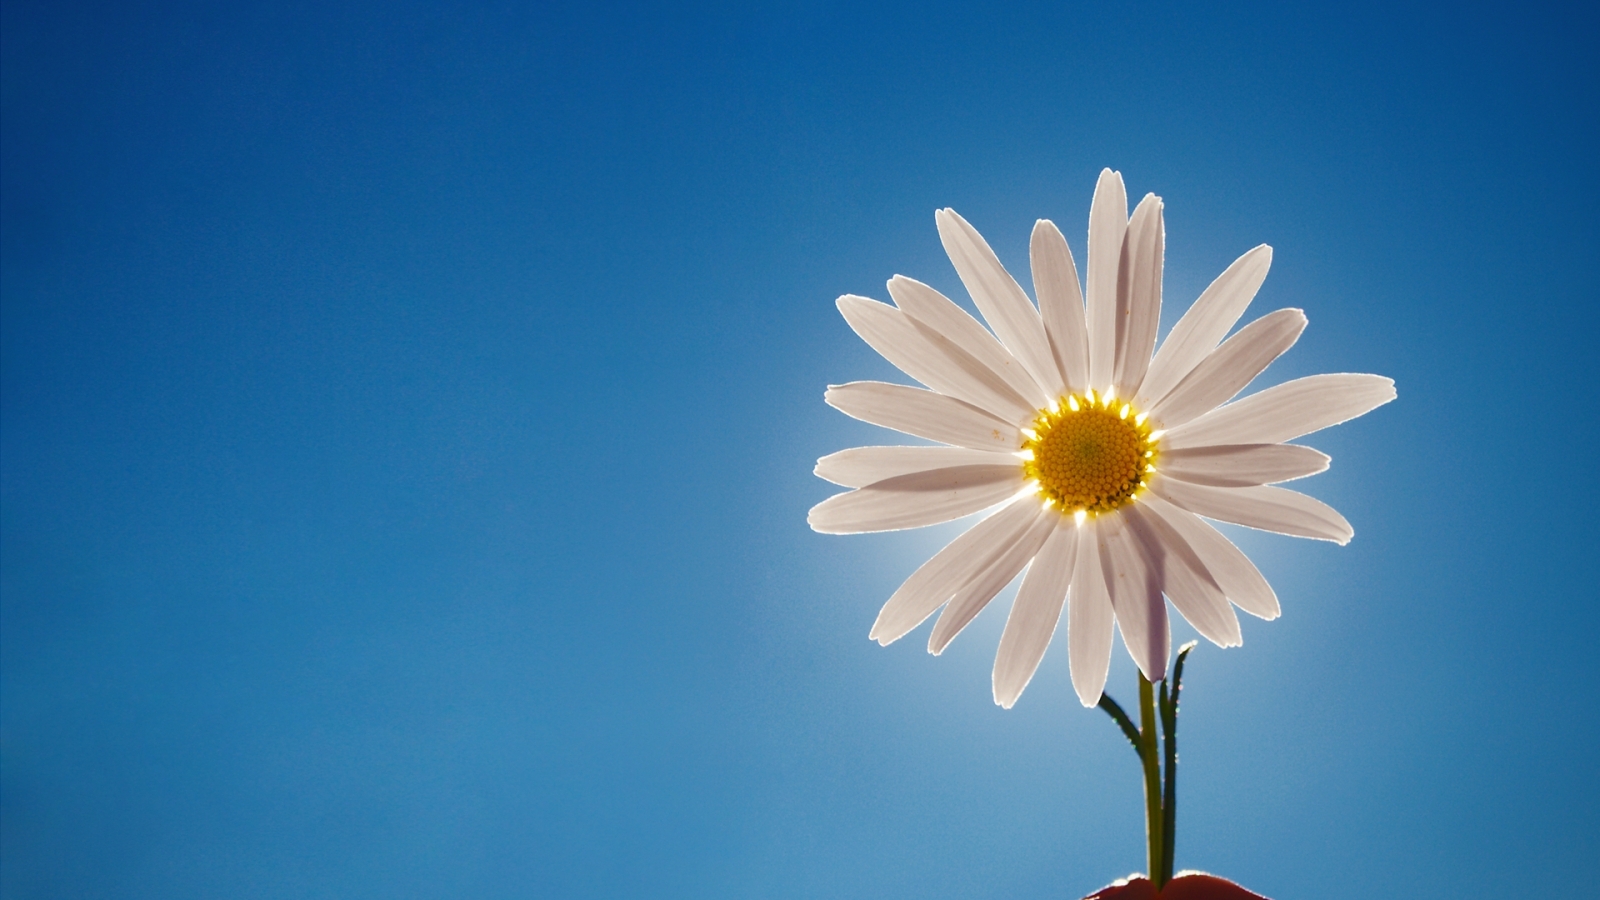 daisy-flower-below-sunlight-wallpaper-1600x900-538b687a89a91.jpg